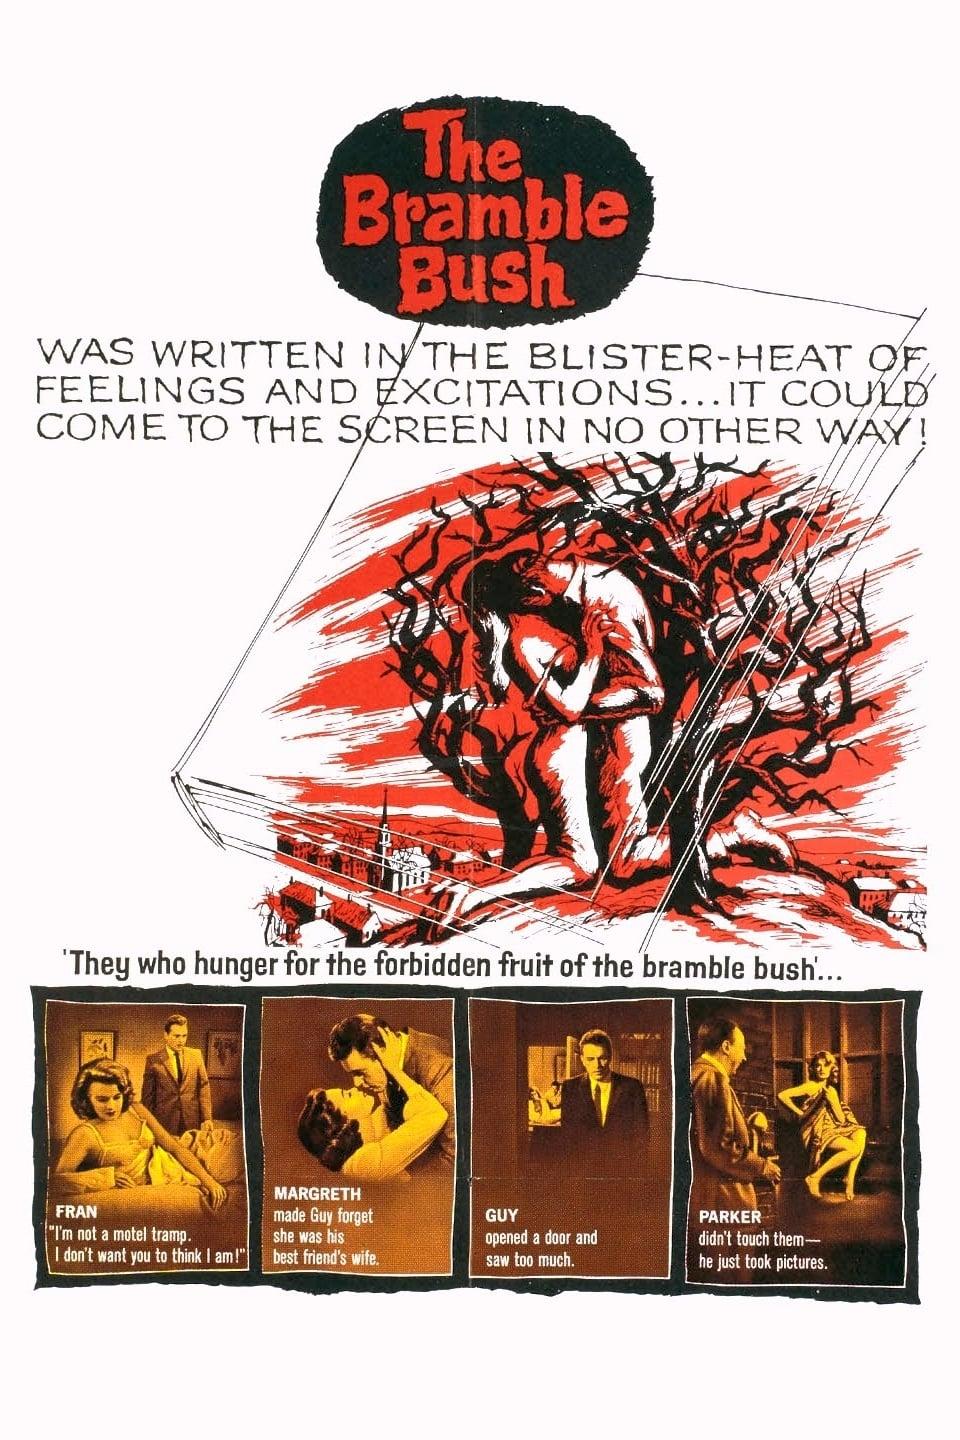 The Bramble Bush poster